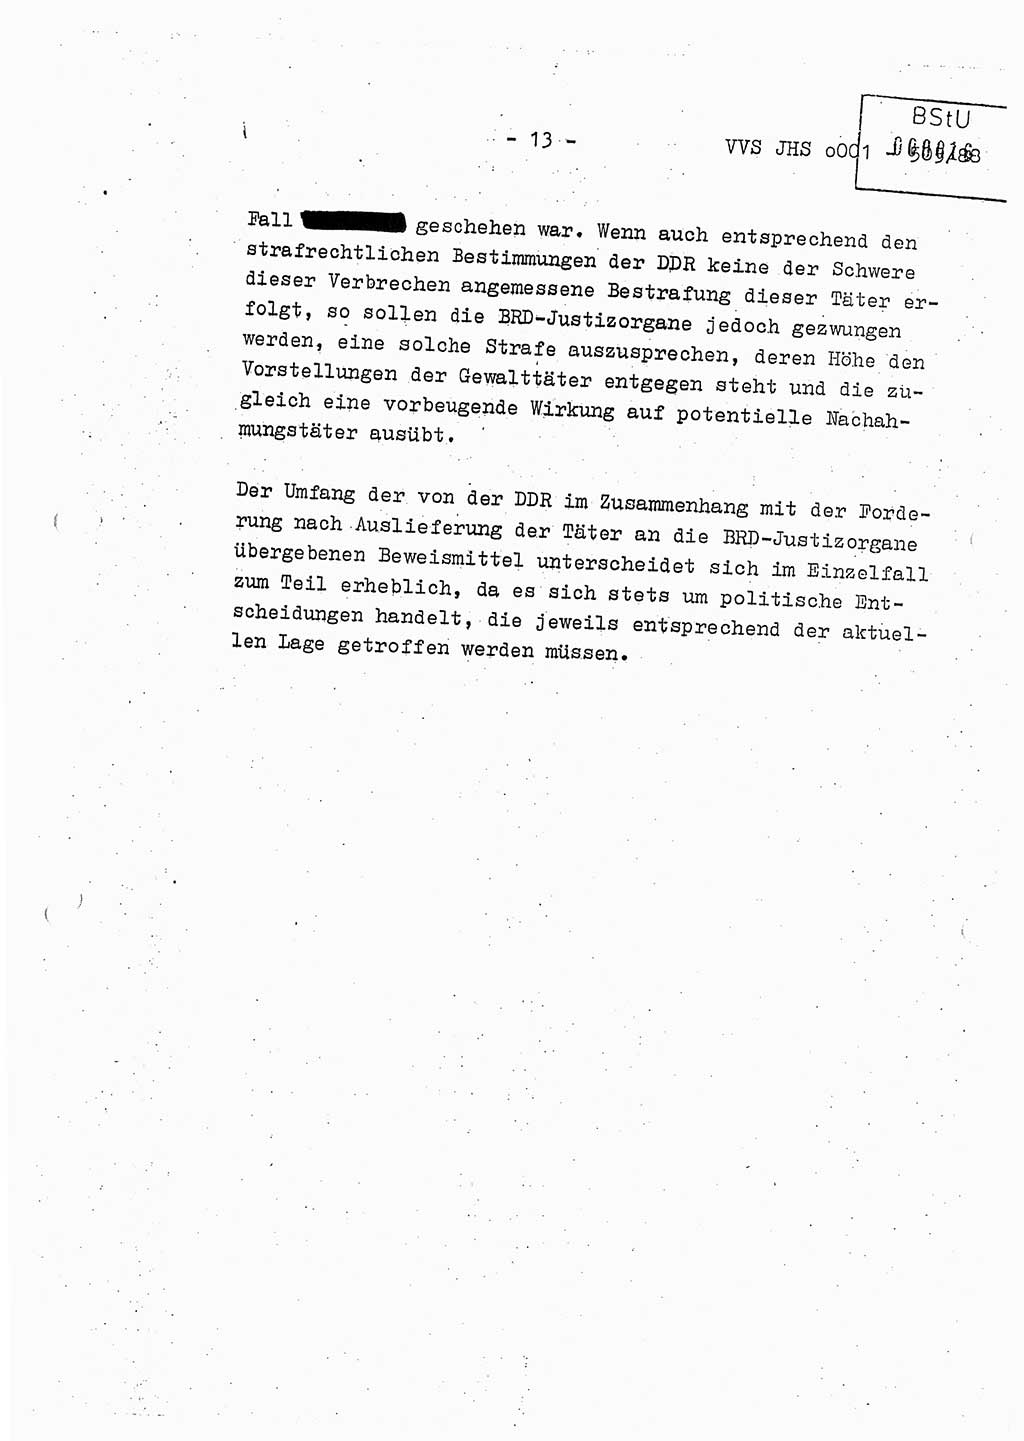 Diplomarbeit Leutnant Frank Schulze (HA Ⅸ/9), Ministerium für Staatssicherheit (MfS) [Deutsche Demokratische Republik (DDR)], Juristische Hochschule (JHS), Vertrauliche Verschlußsache (VVS) o001-505/88, Potsdam 1988, Seite 13 (Dipl.-Arb. MfS DDR JHS VVS o001-505/88 1988, S. 13)